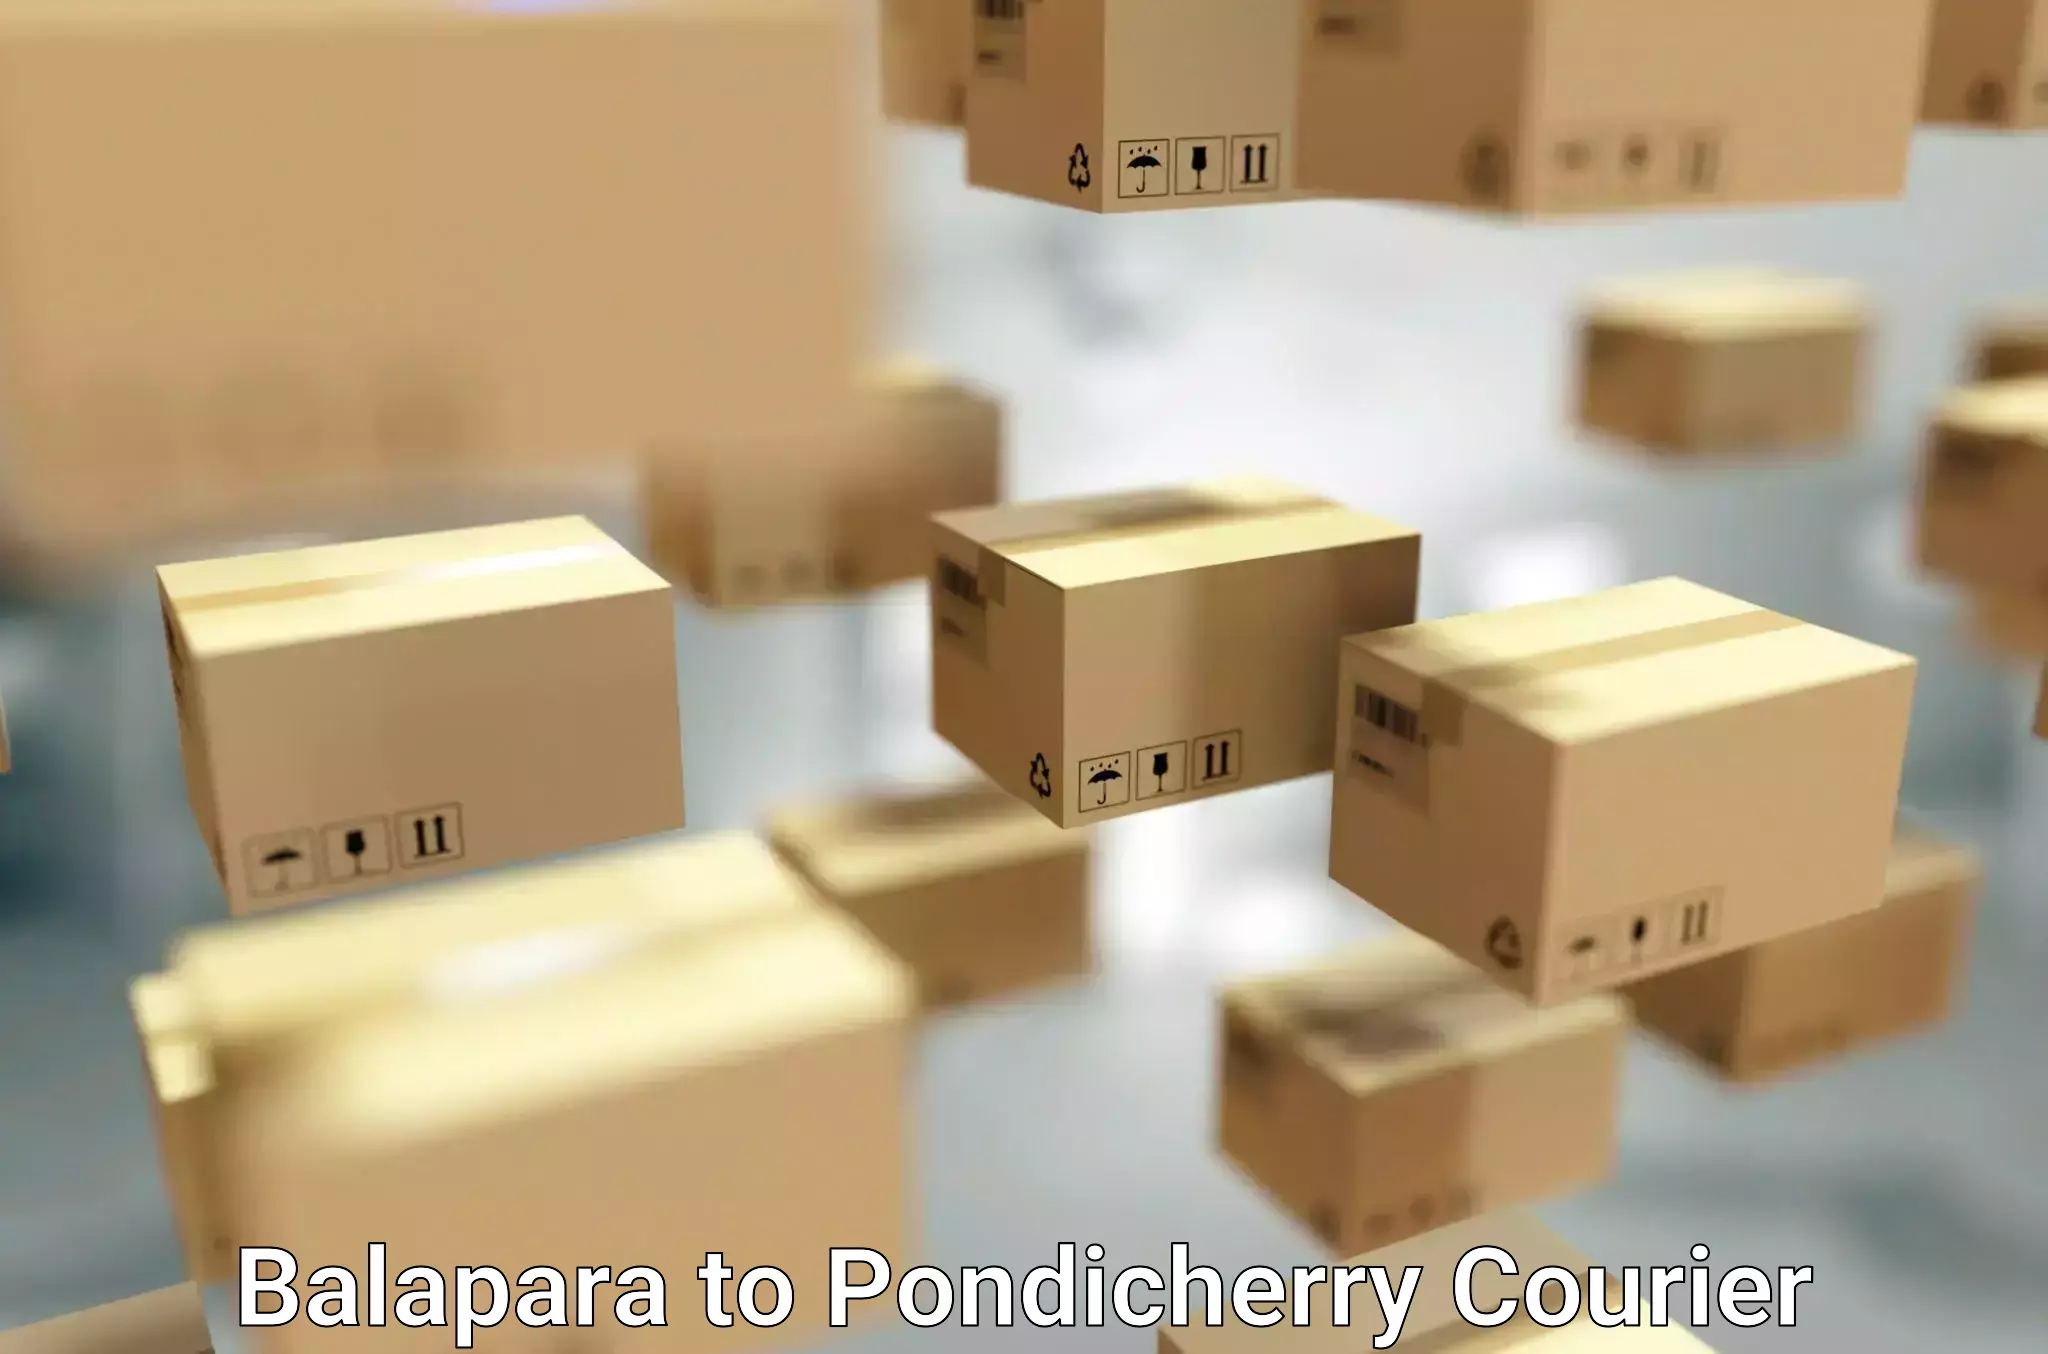 Furniture transport experts Balapara to Pondicherry